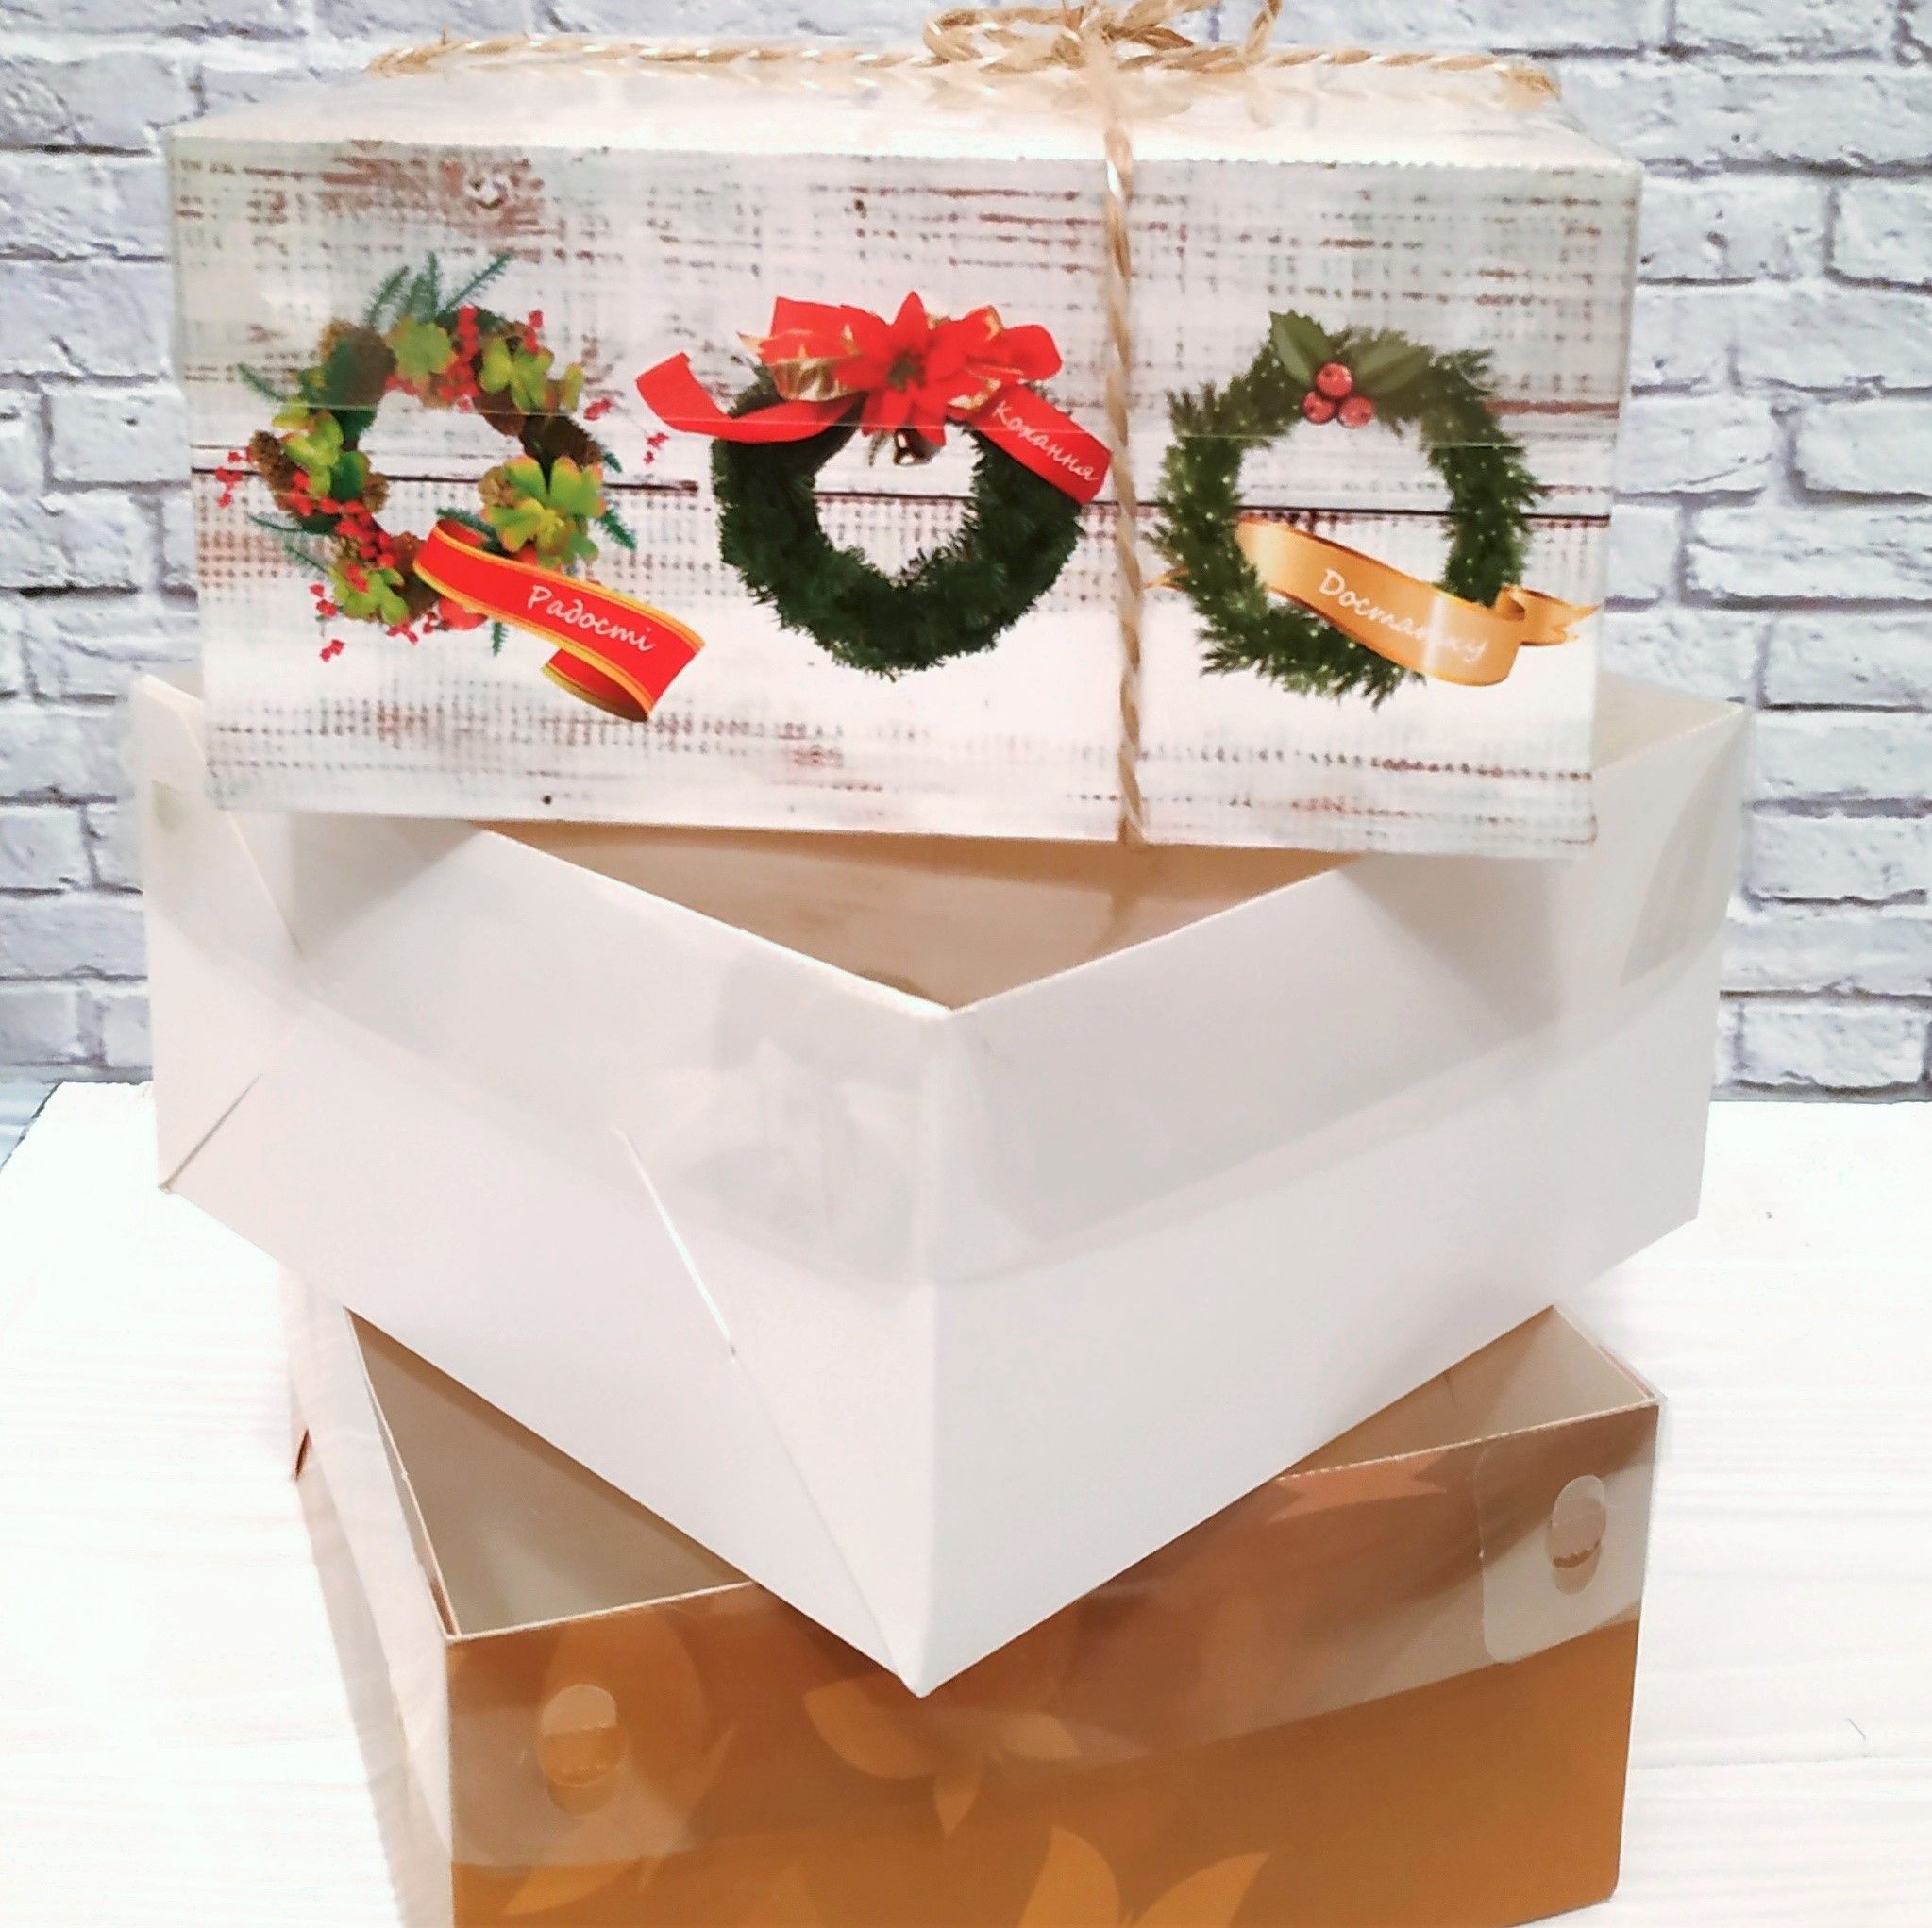 ⋗ Коробка на 4 кекса с прозрачной крышкой Золотая, 16х16х8 см купить в Украине ➛ CakeShop.com.ua, фото